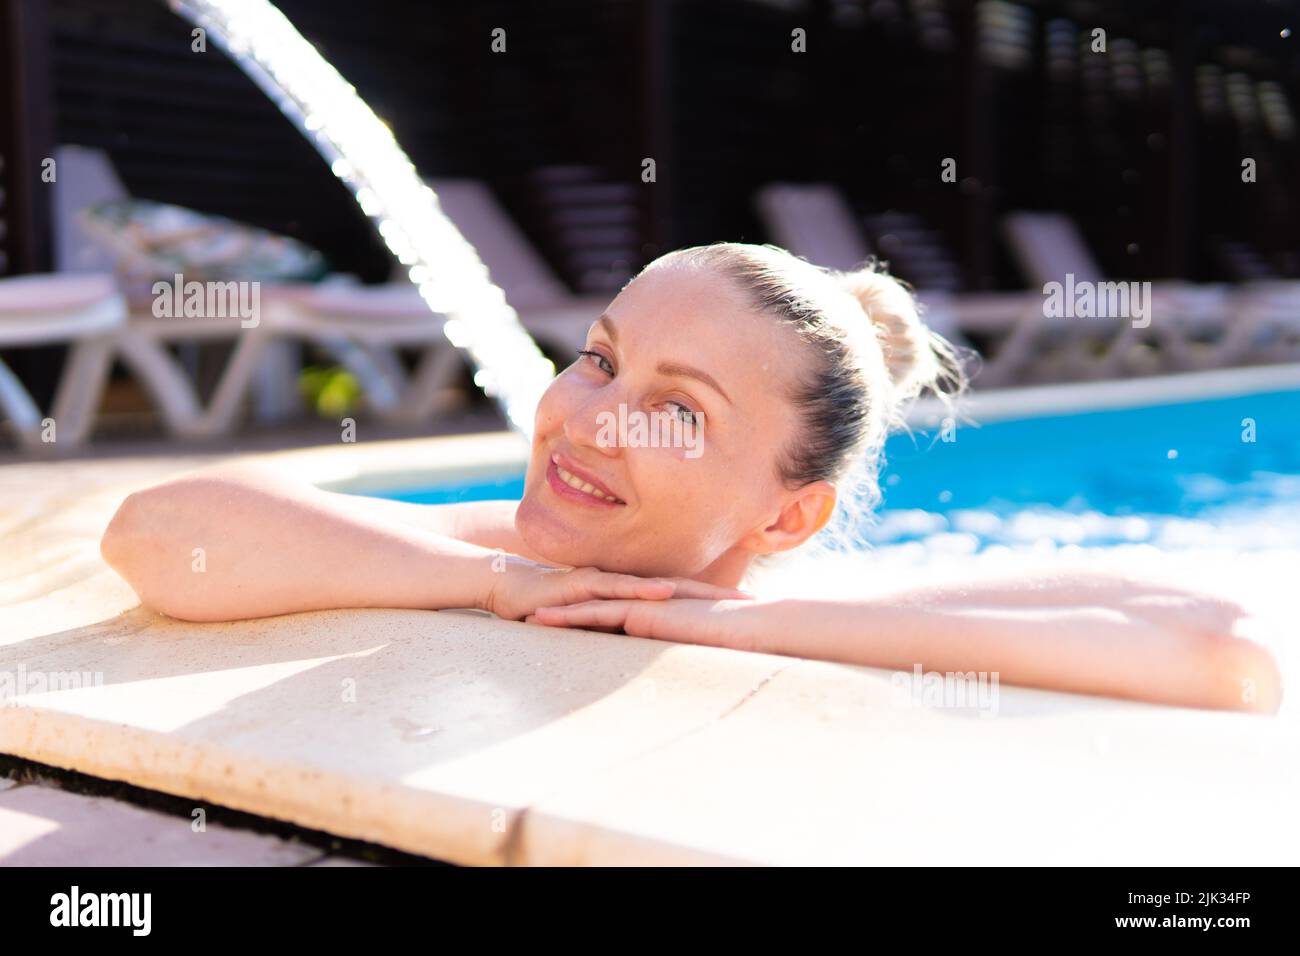 Lächelnd Pool Schwimmen Frau junge Wasserfall schönen Luxus im Freien entspannen, Konzept Urlaub genießen zum Ausruhen und planschen Vergnügen, geschlossenen Tropfen Stockfoto